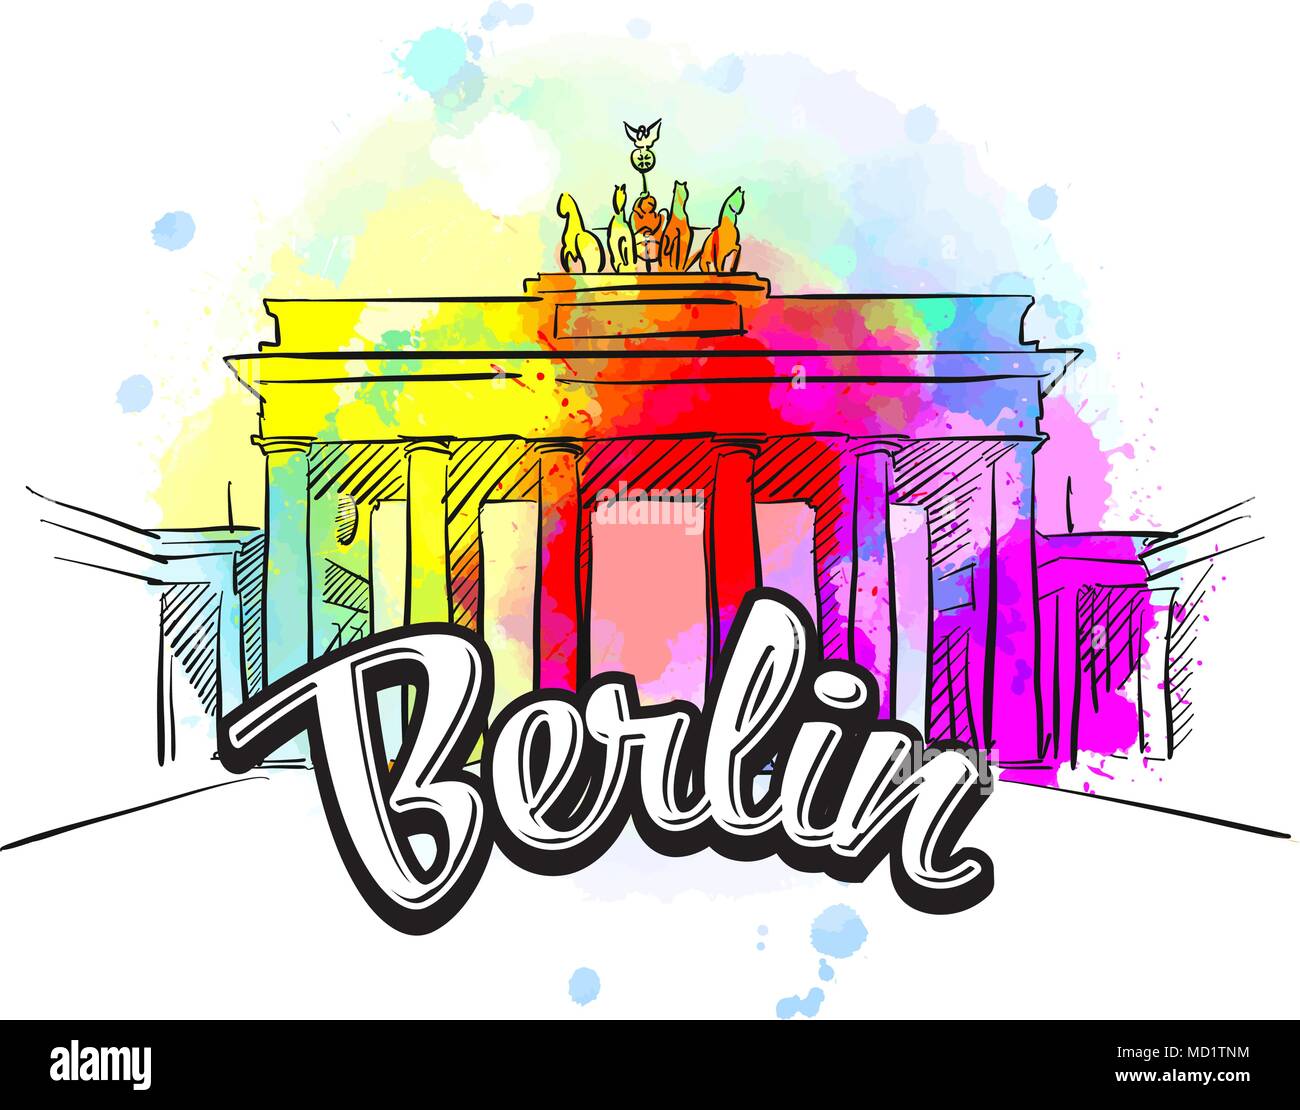 Berlin Brandenburg Gate Copertina. Disegnata a mano illustrazione. Viaggiare per il mondo il concetto di immagini vettoriali per il marketing digitale e stampe poster. Illustrazione Vettoriale